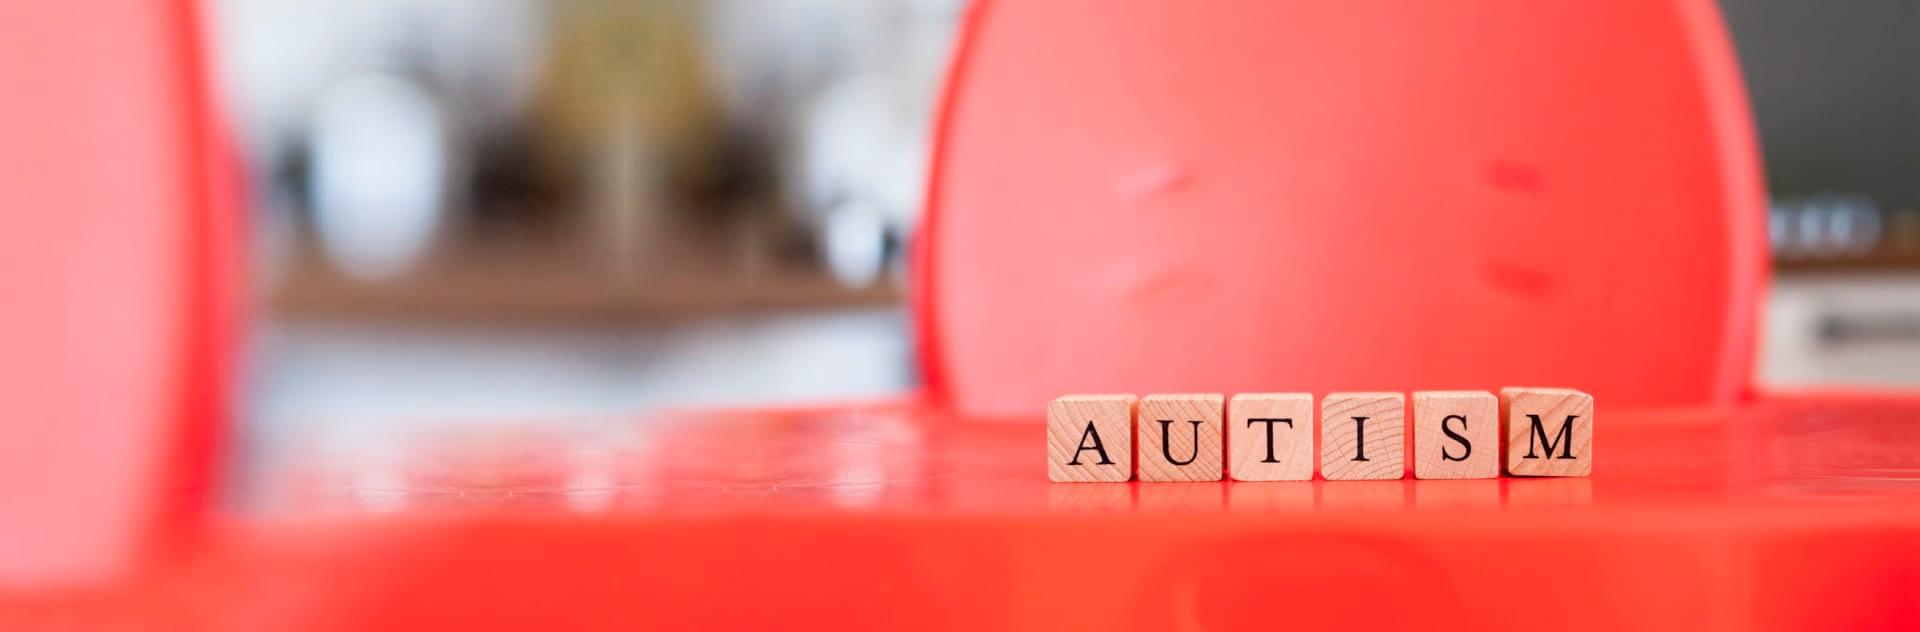 Autismm word in scrabble piece